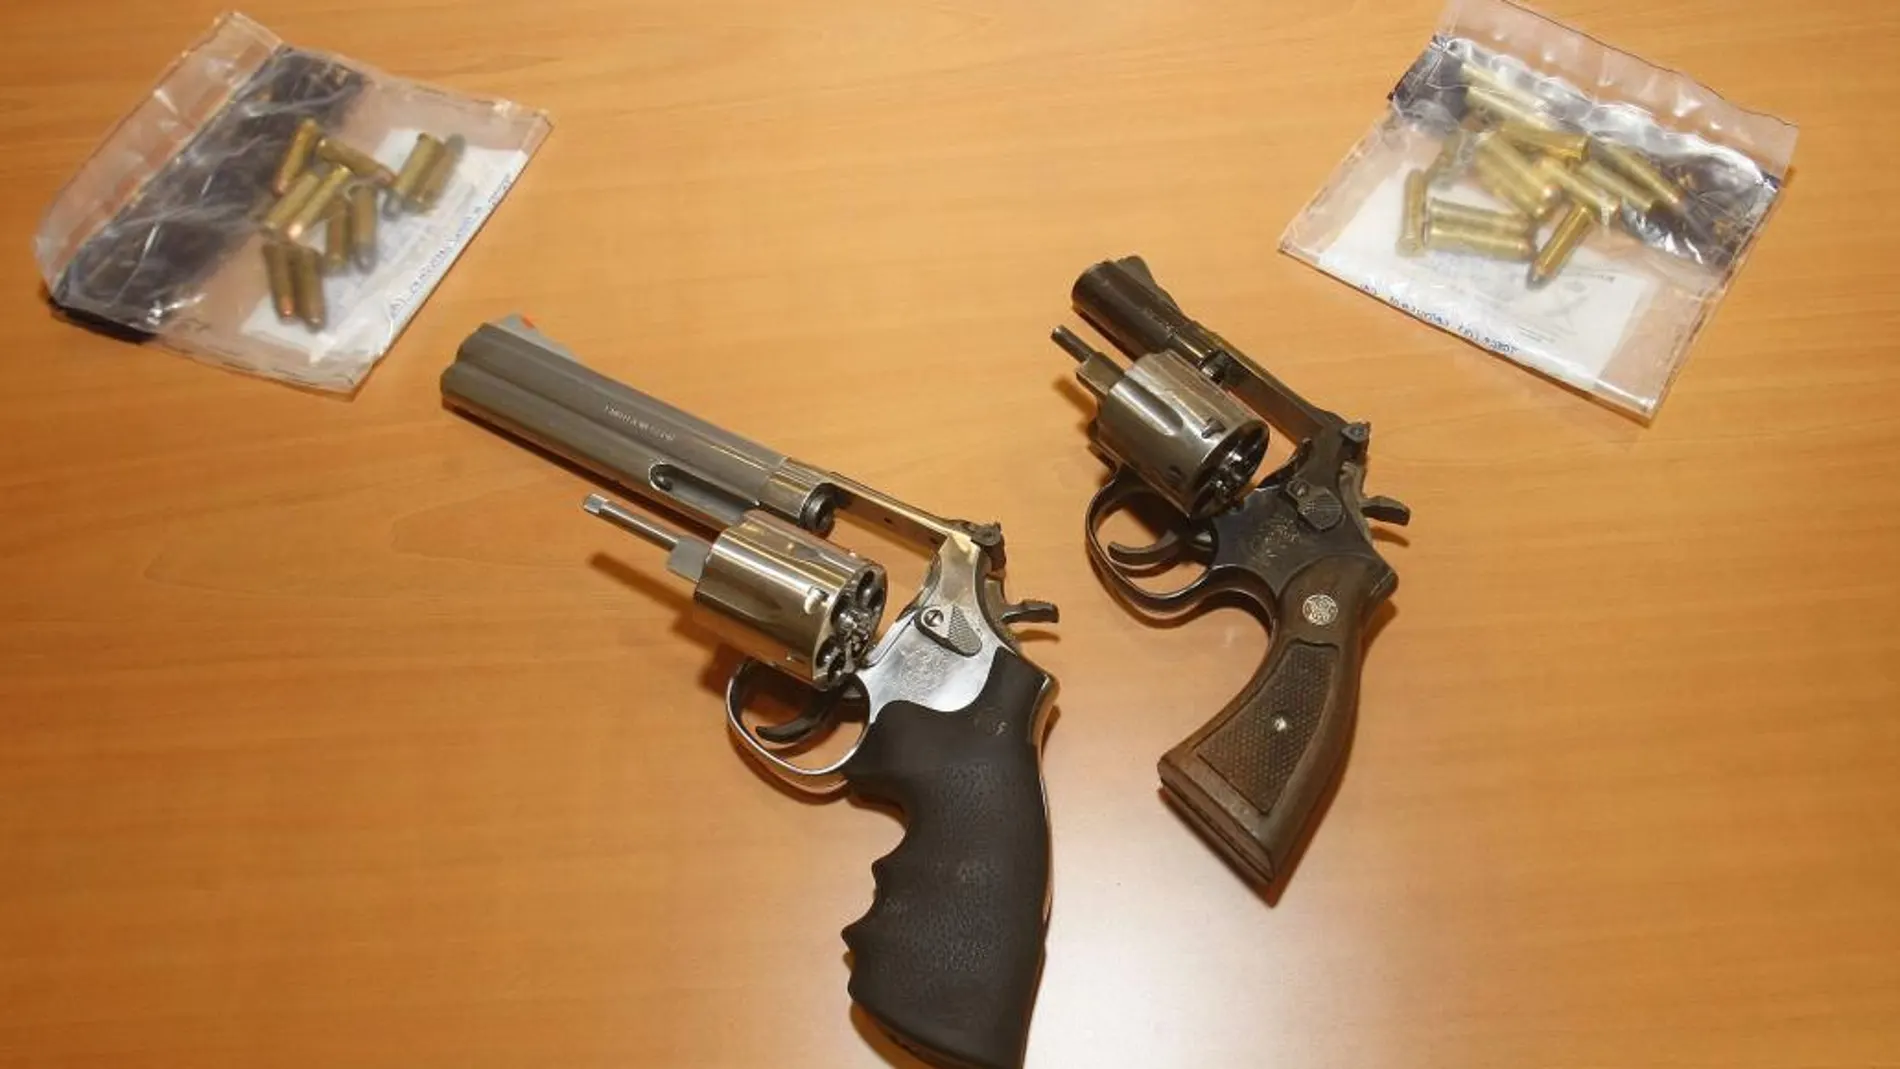 Imagen del arma con el que atracaba los bancos (izquierda), junto a otro revólver que le fue incautado